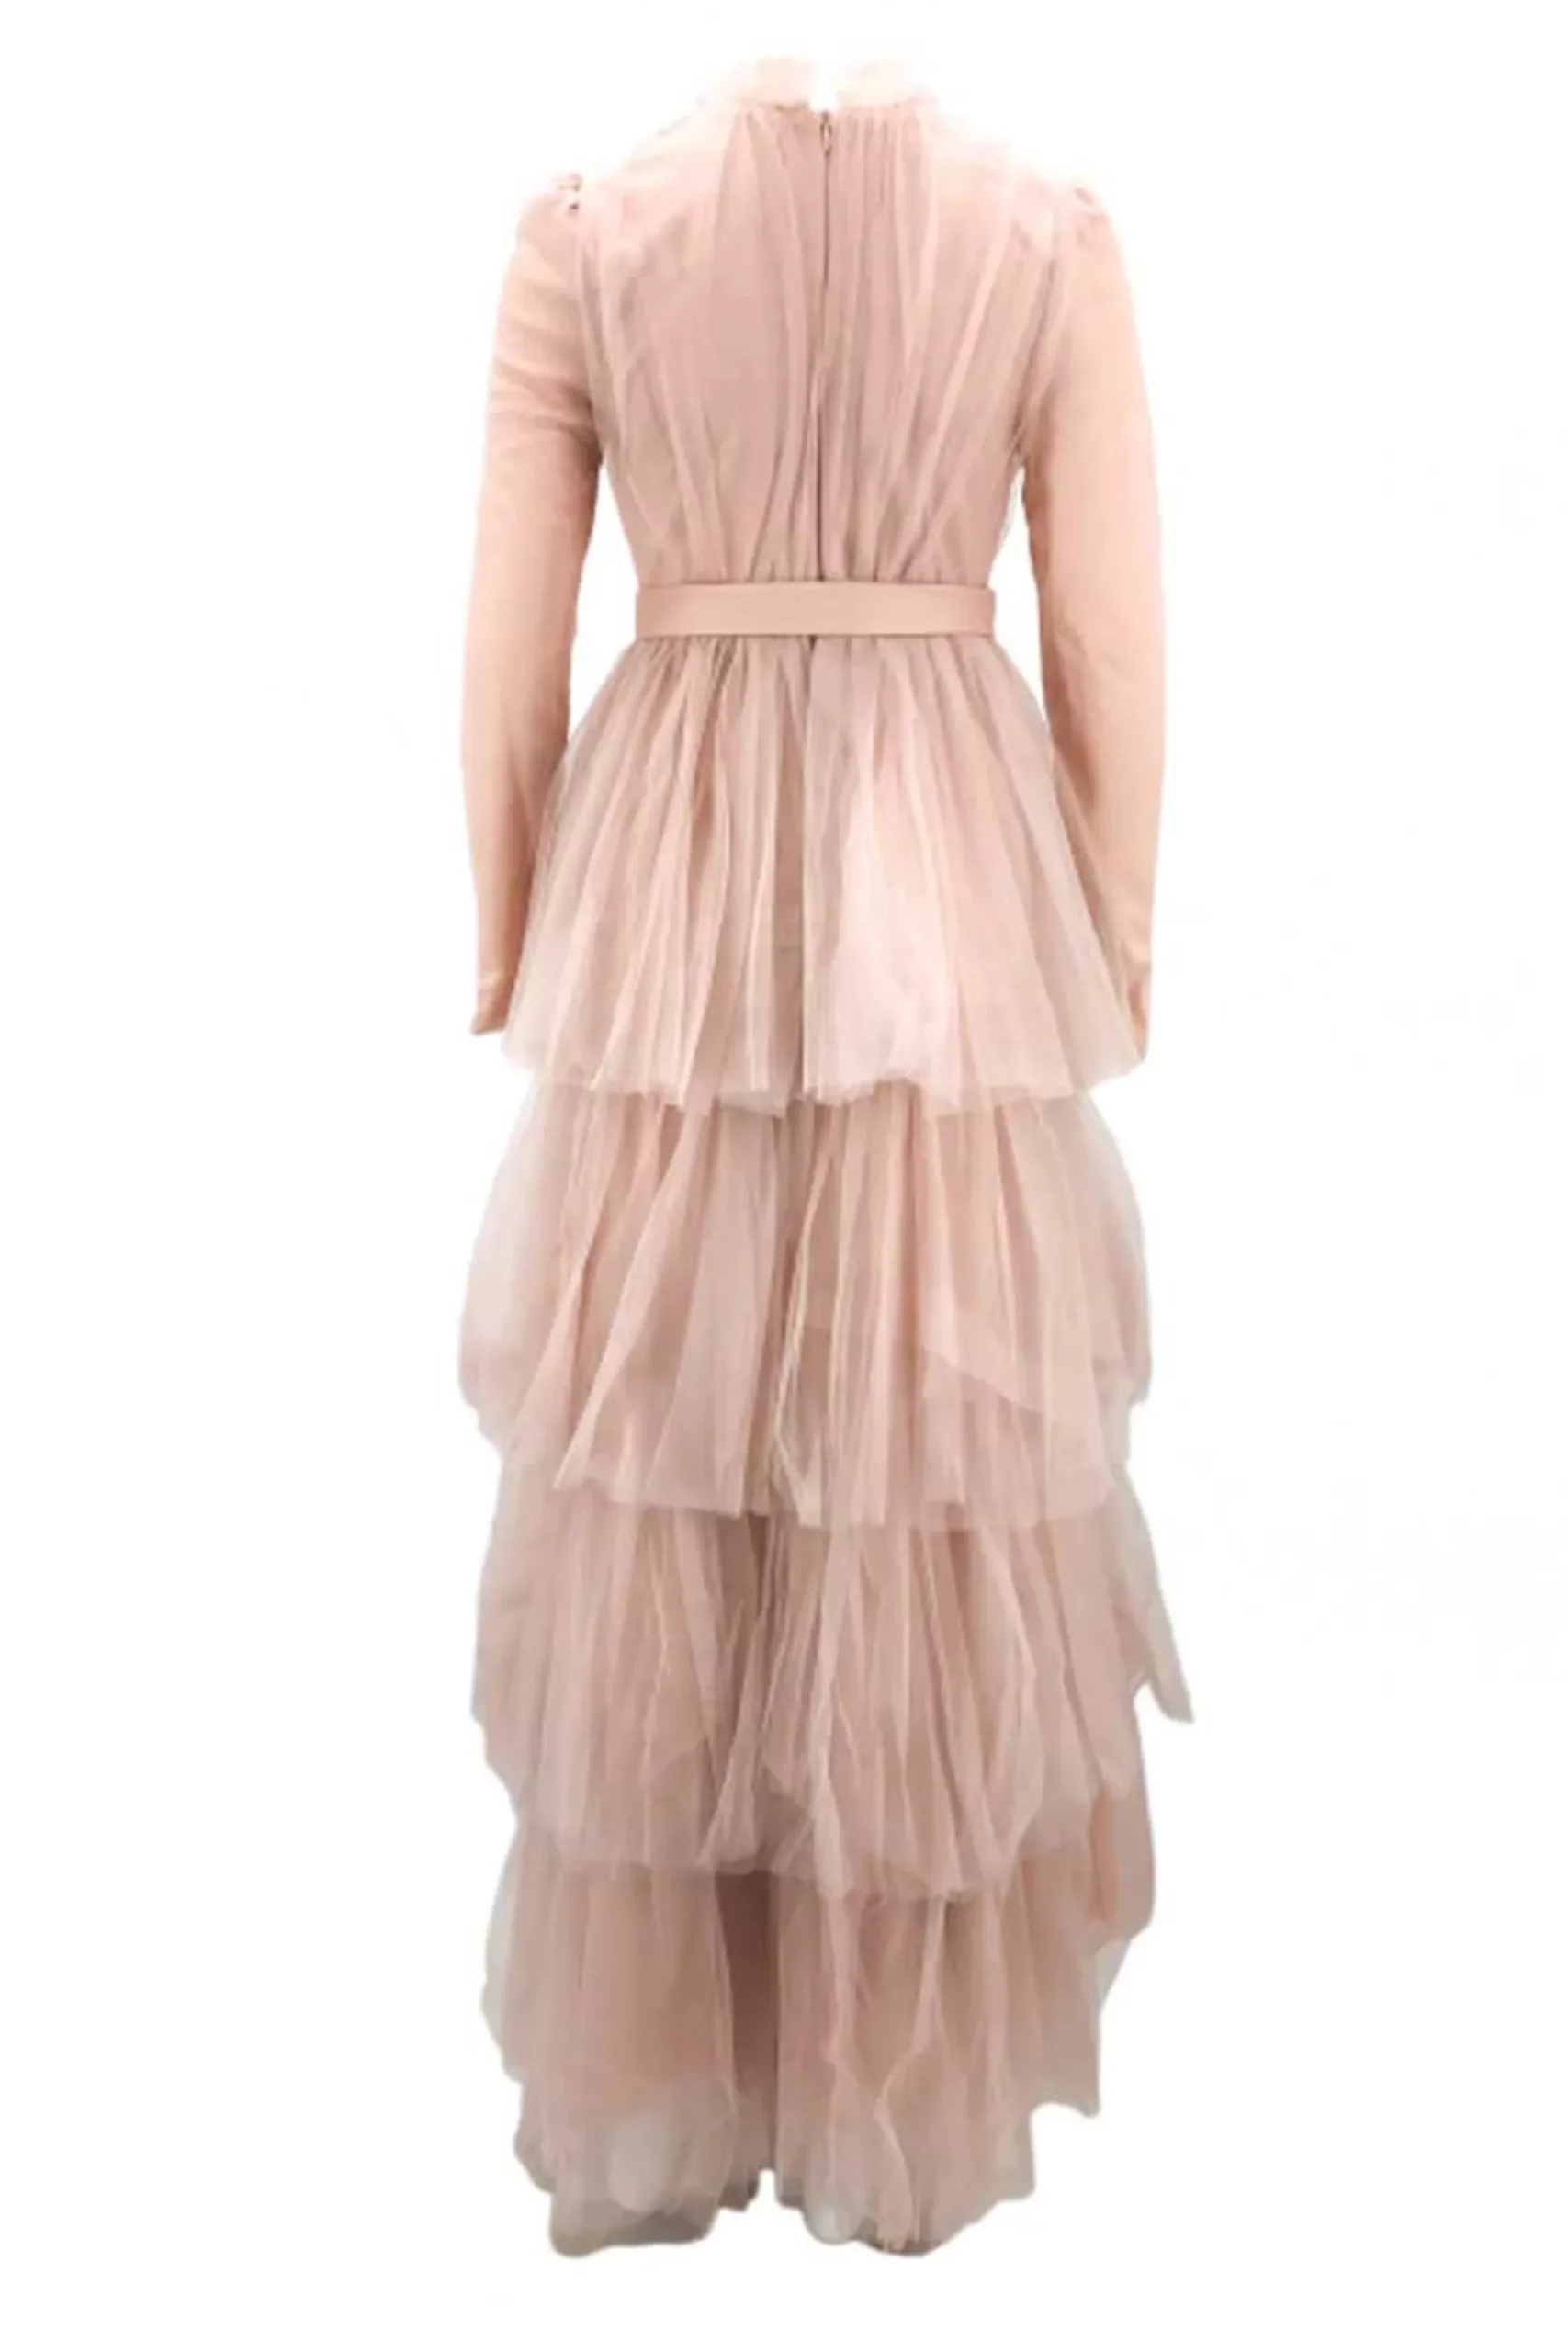 Isra Pink Semi Formal Dress